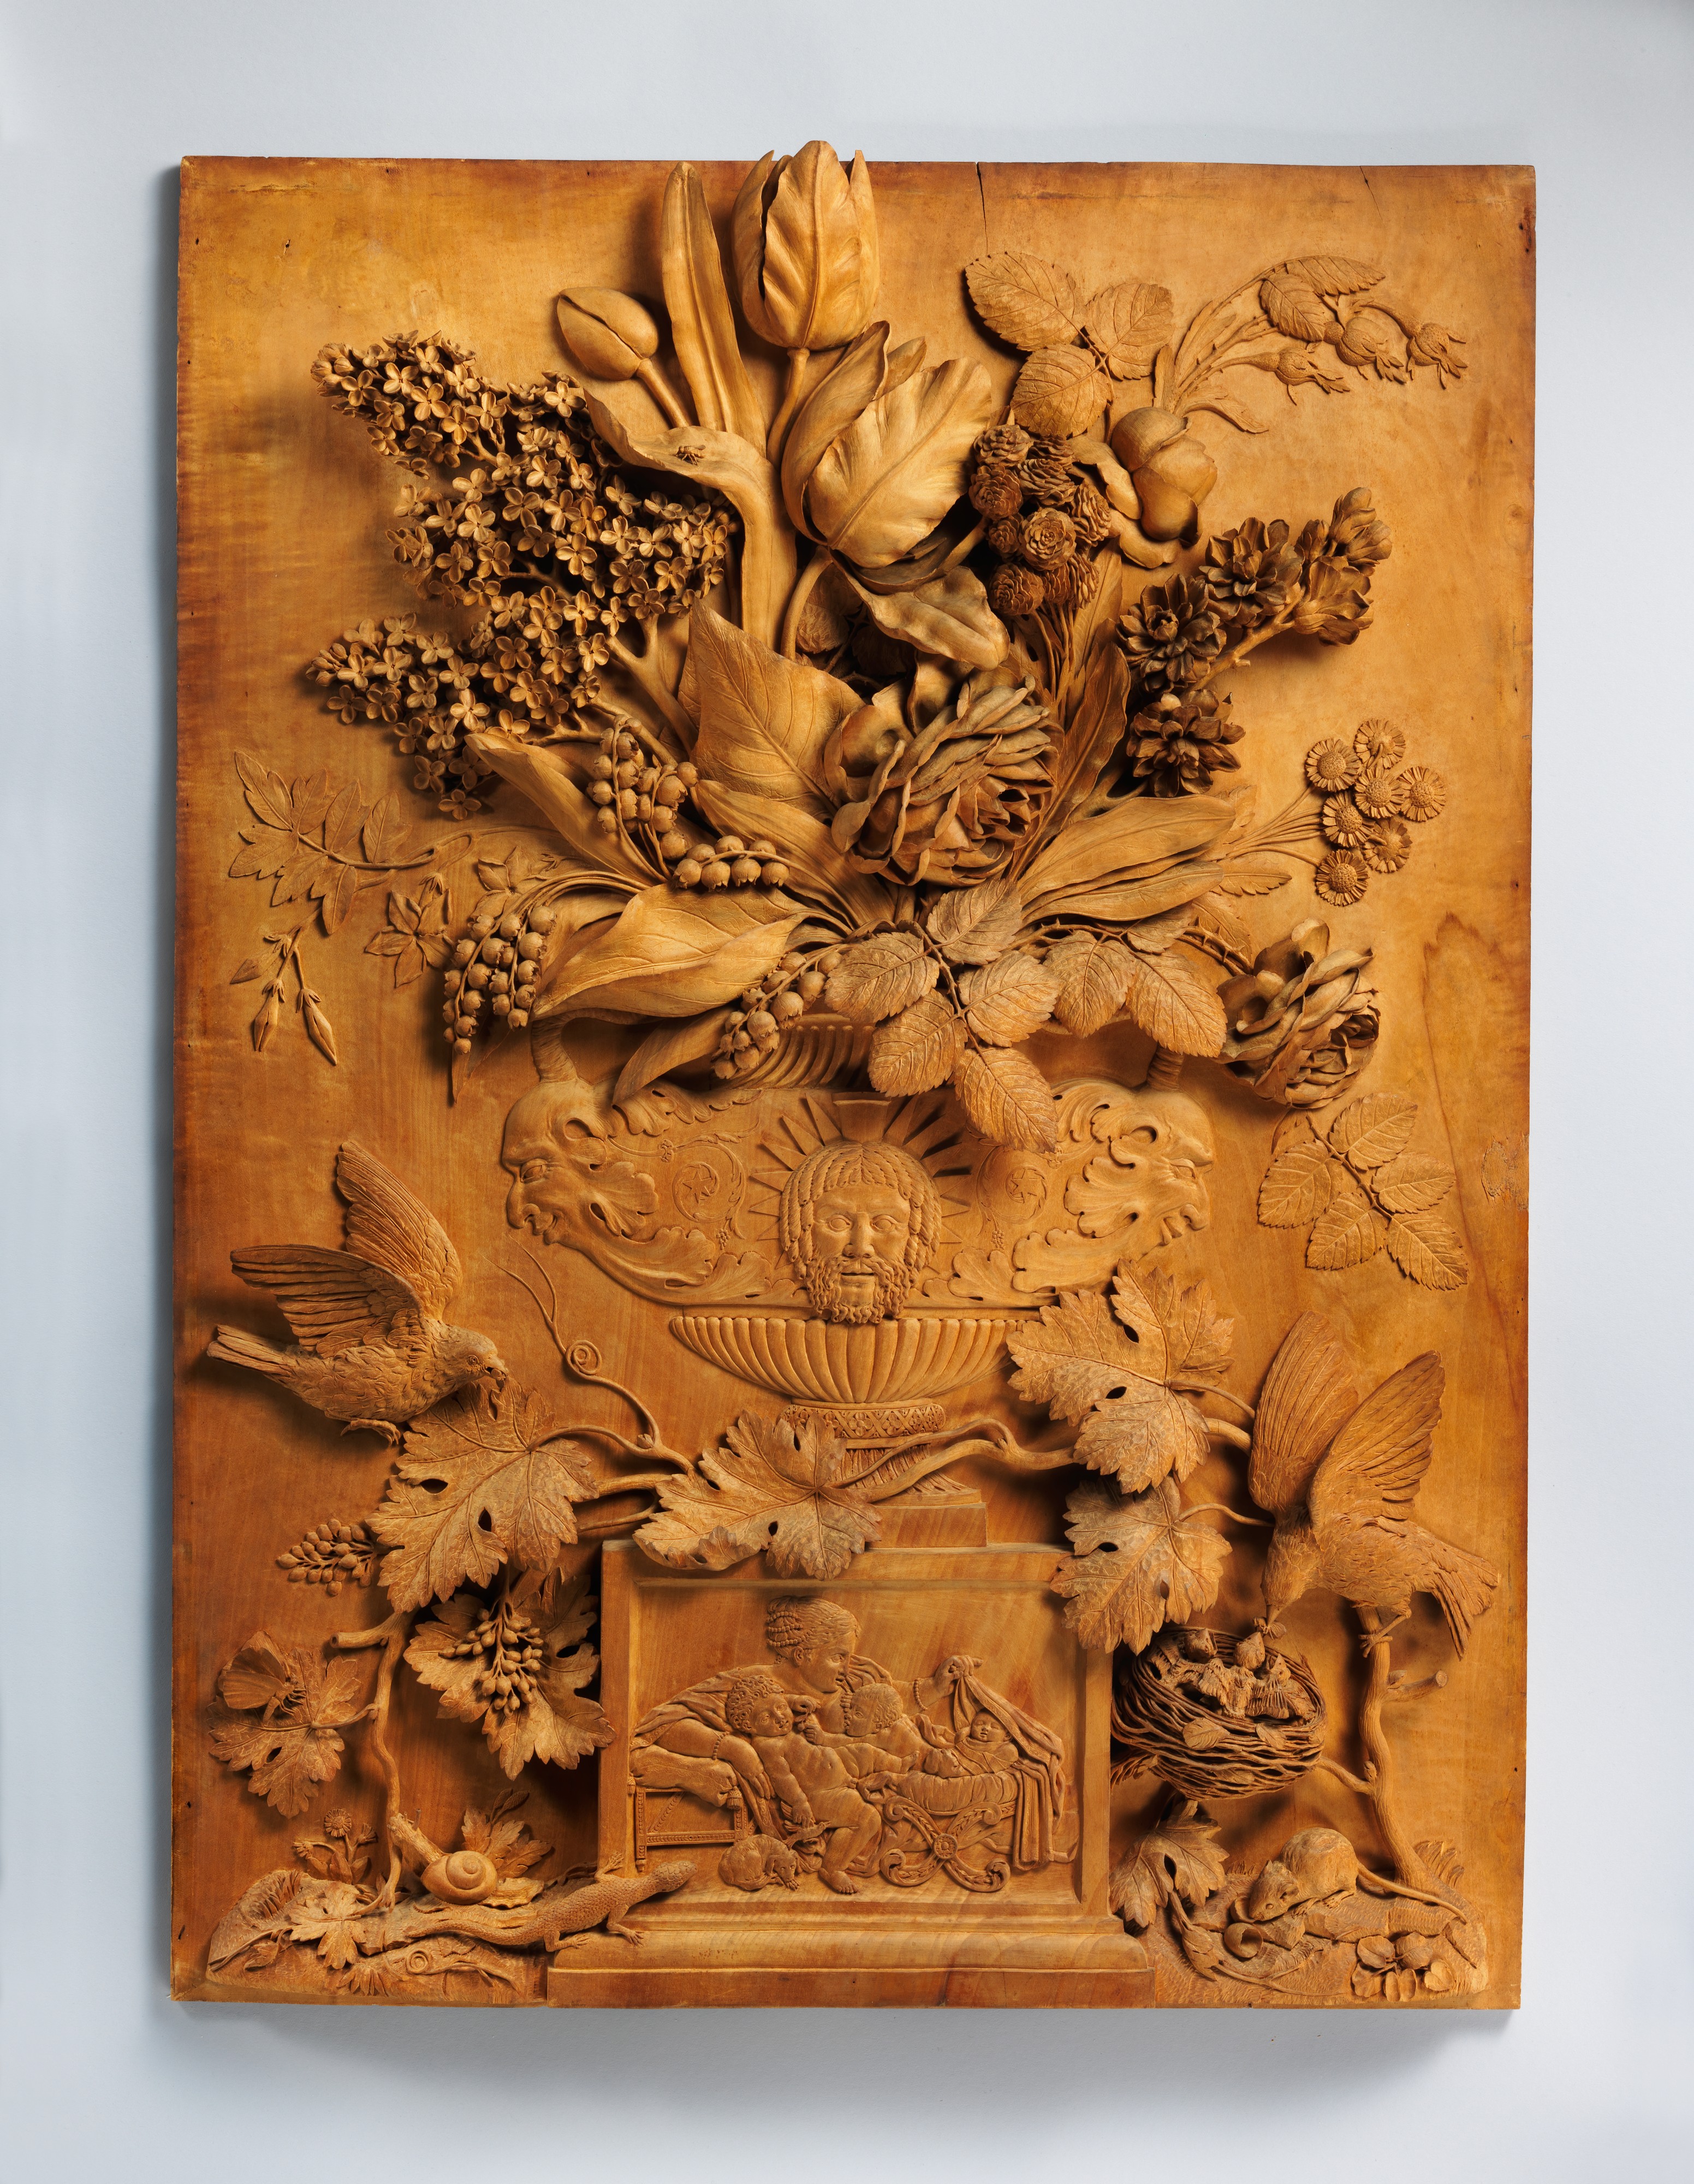 Versailles: Decorative relief sculpture, base of plinth